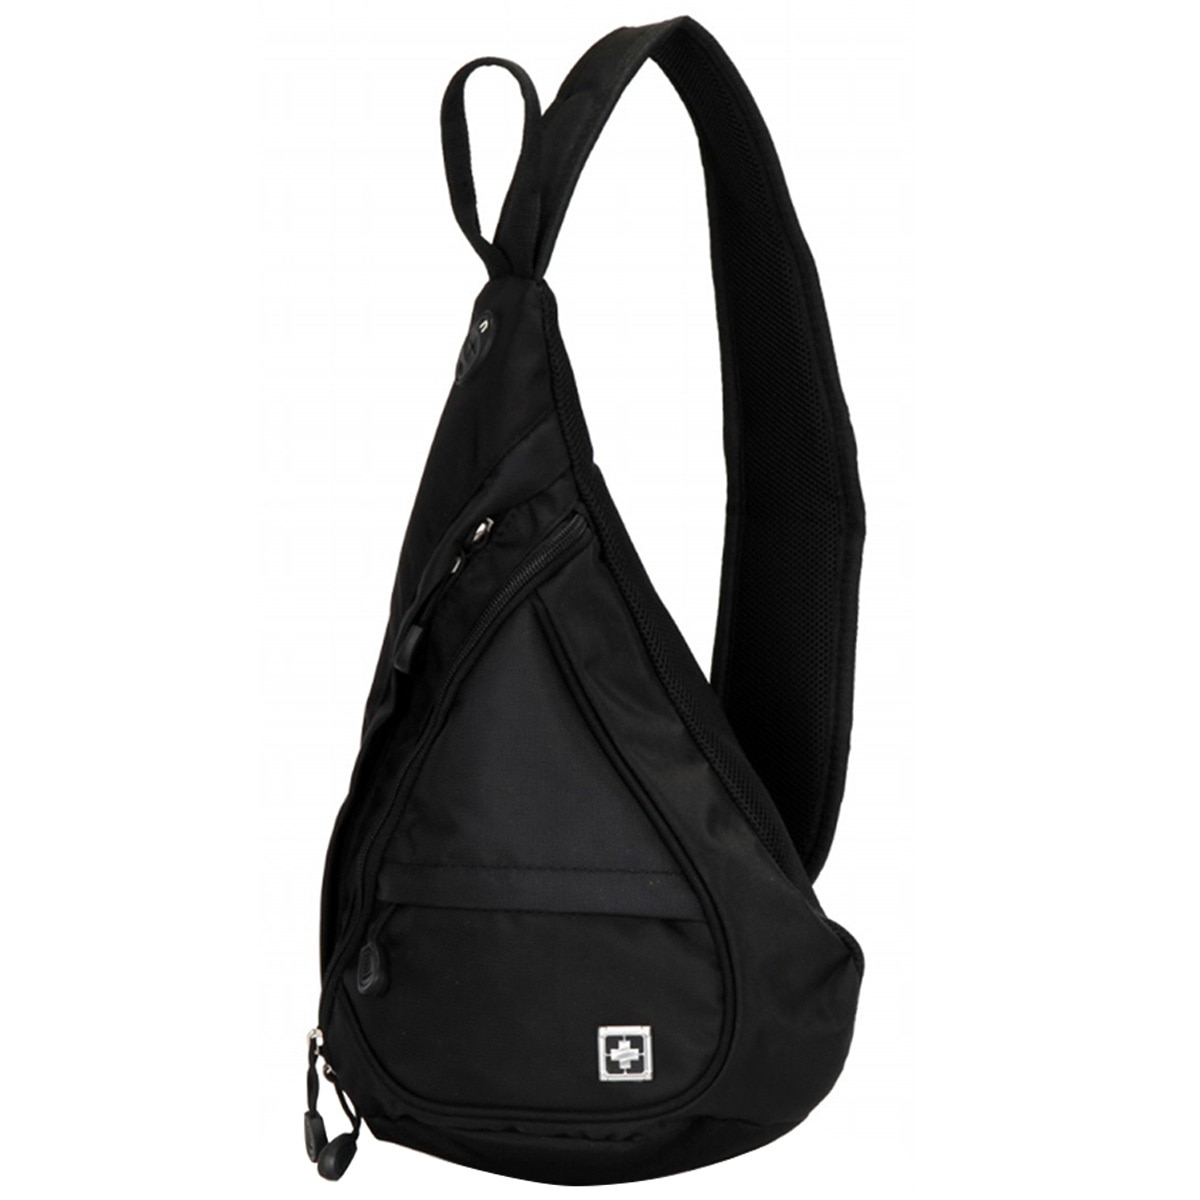 Suissewin Gym Sport &Travel Cross Shoulder Bag - Black